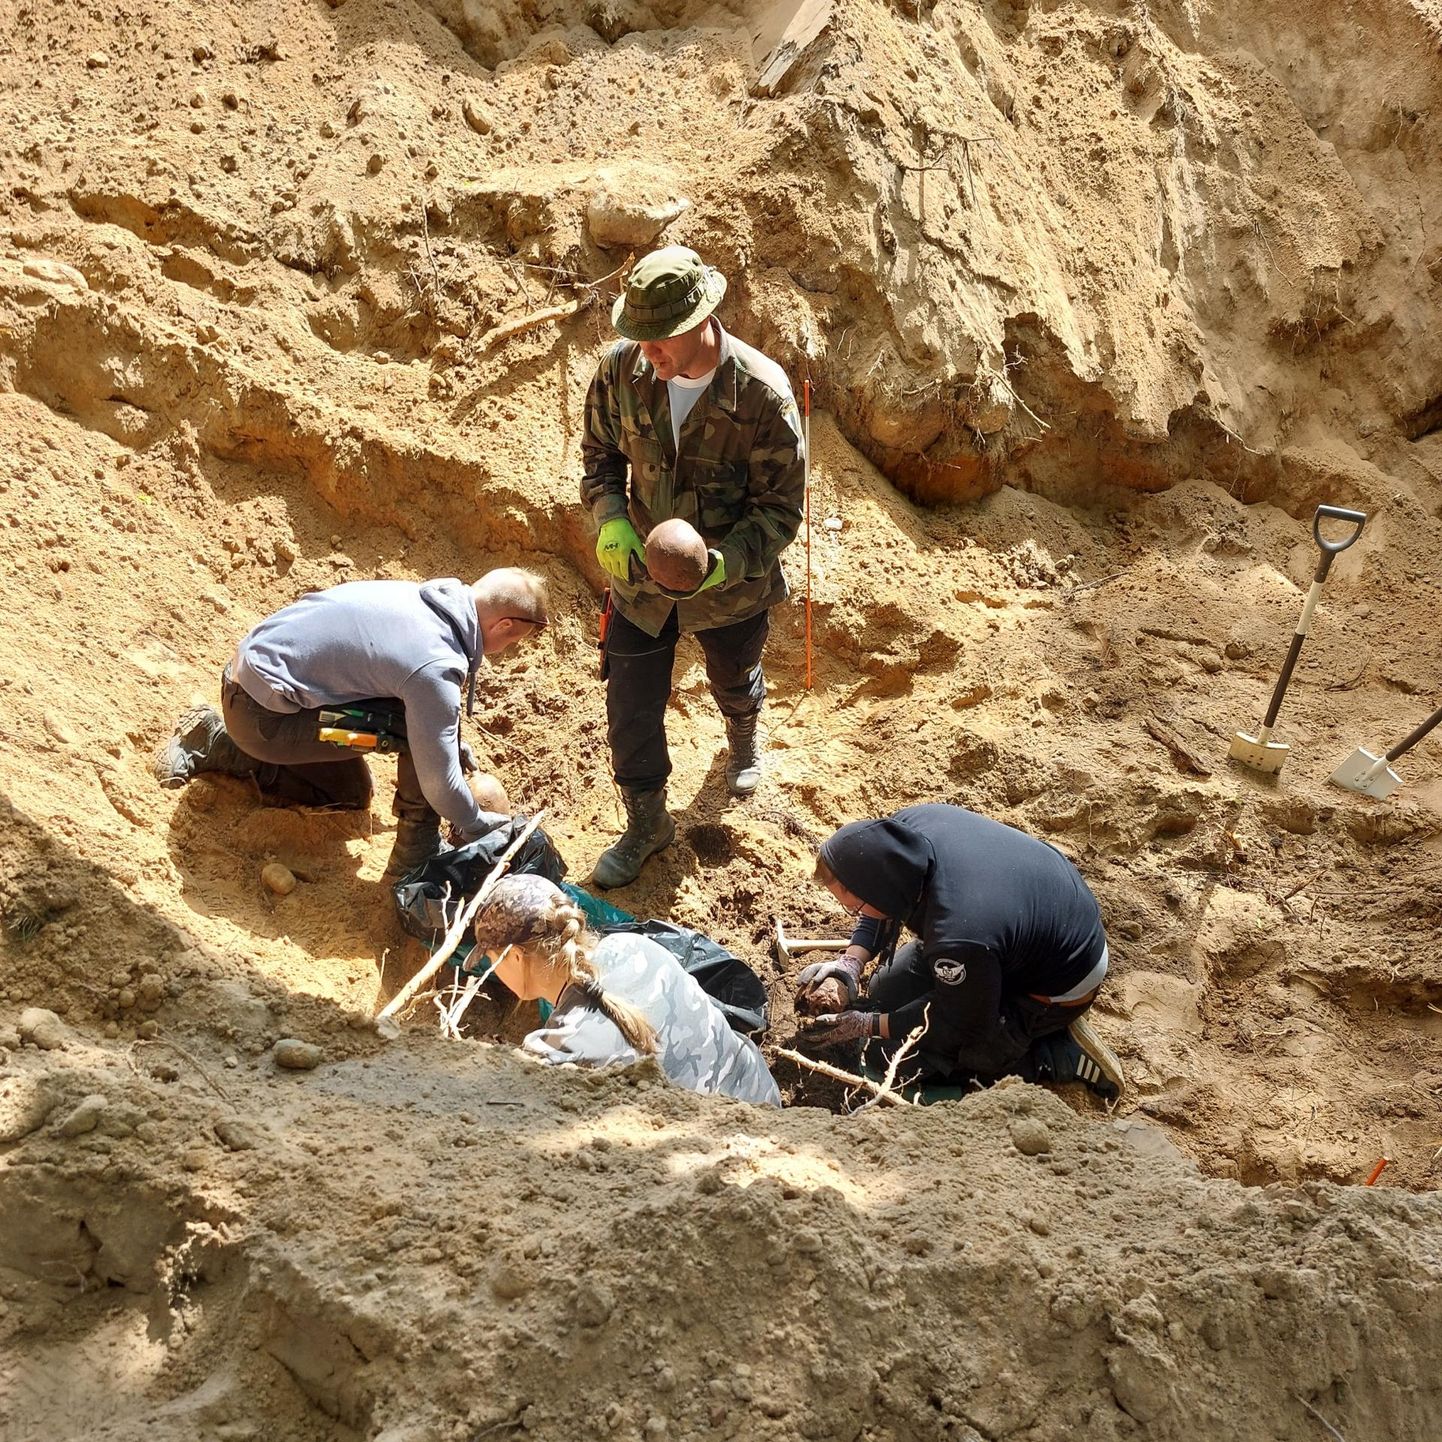 При раскопках военного захоронения в Люллемяэ были найдены останки почти двадцати человек. Однако в предполагаемых братских могилах в двух местах в Валгамаа вообще не было человеческих останков.